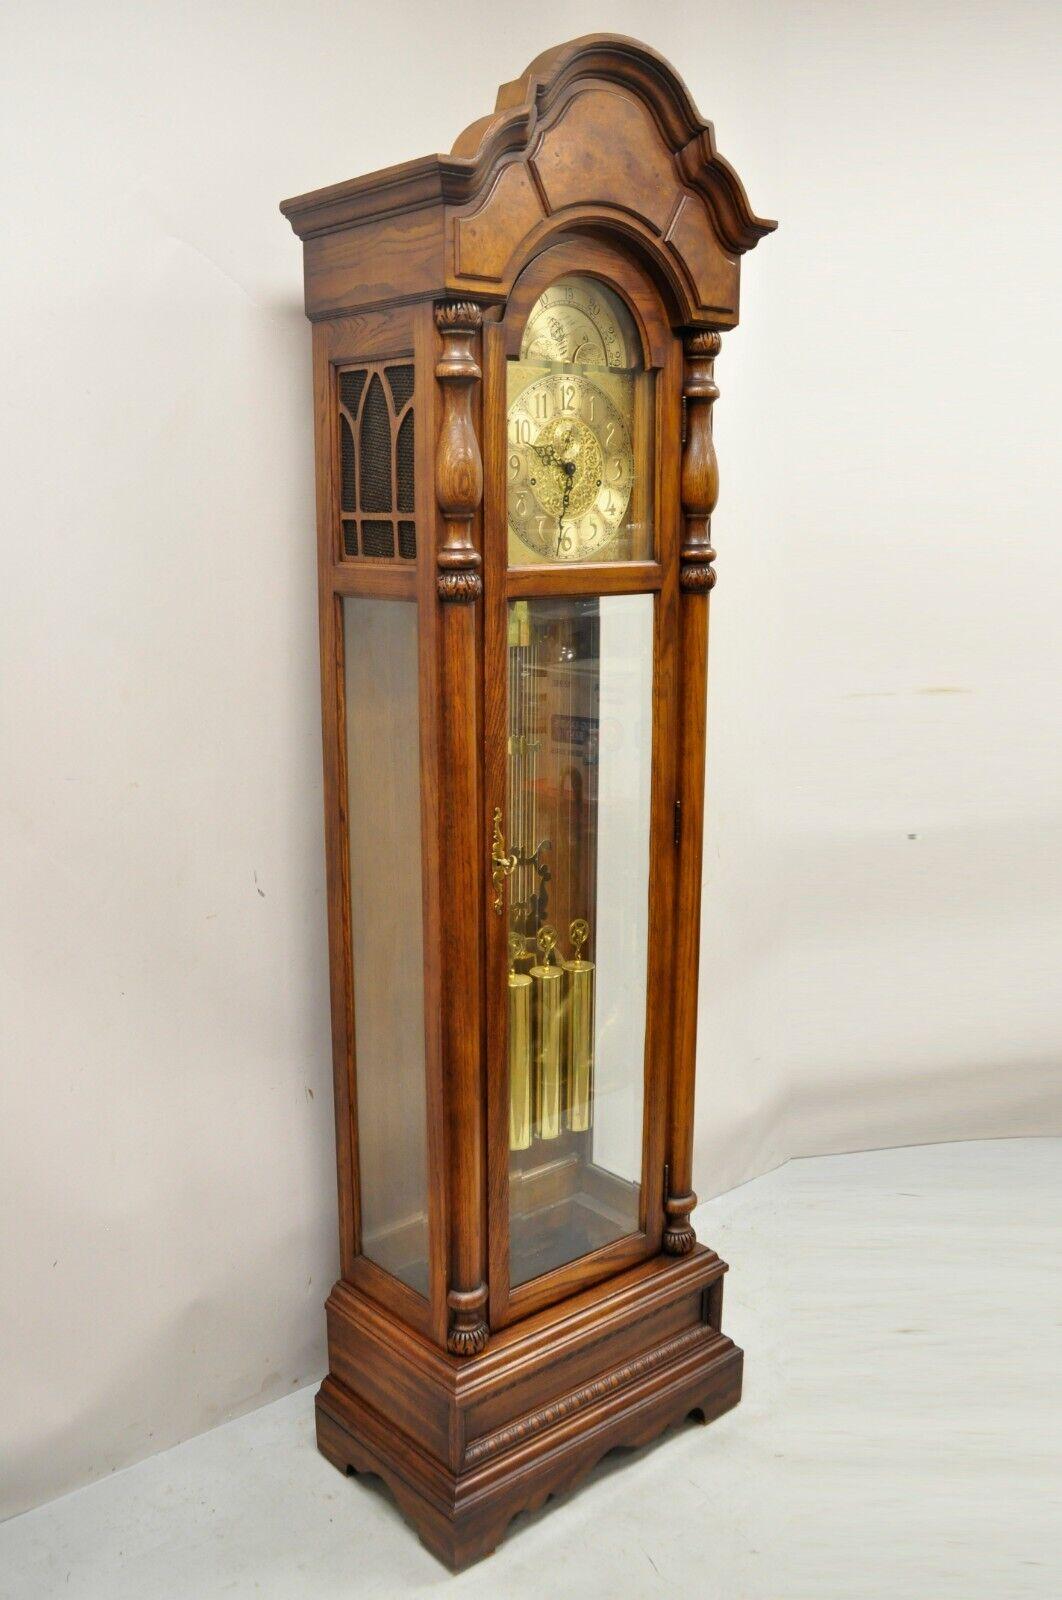 Die Walden Ridge Ridgeway Grandfather Clock Oak Tall Case. Artikelmerkmale Seriennummer 8206809, Massivholzrahmen, schöne Holzmaserung, Qualität amerikanischer Handwerkskunst, großen Stil und Form, Messing-Plakette liest 